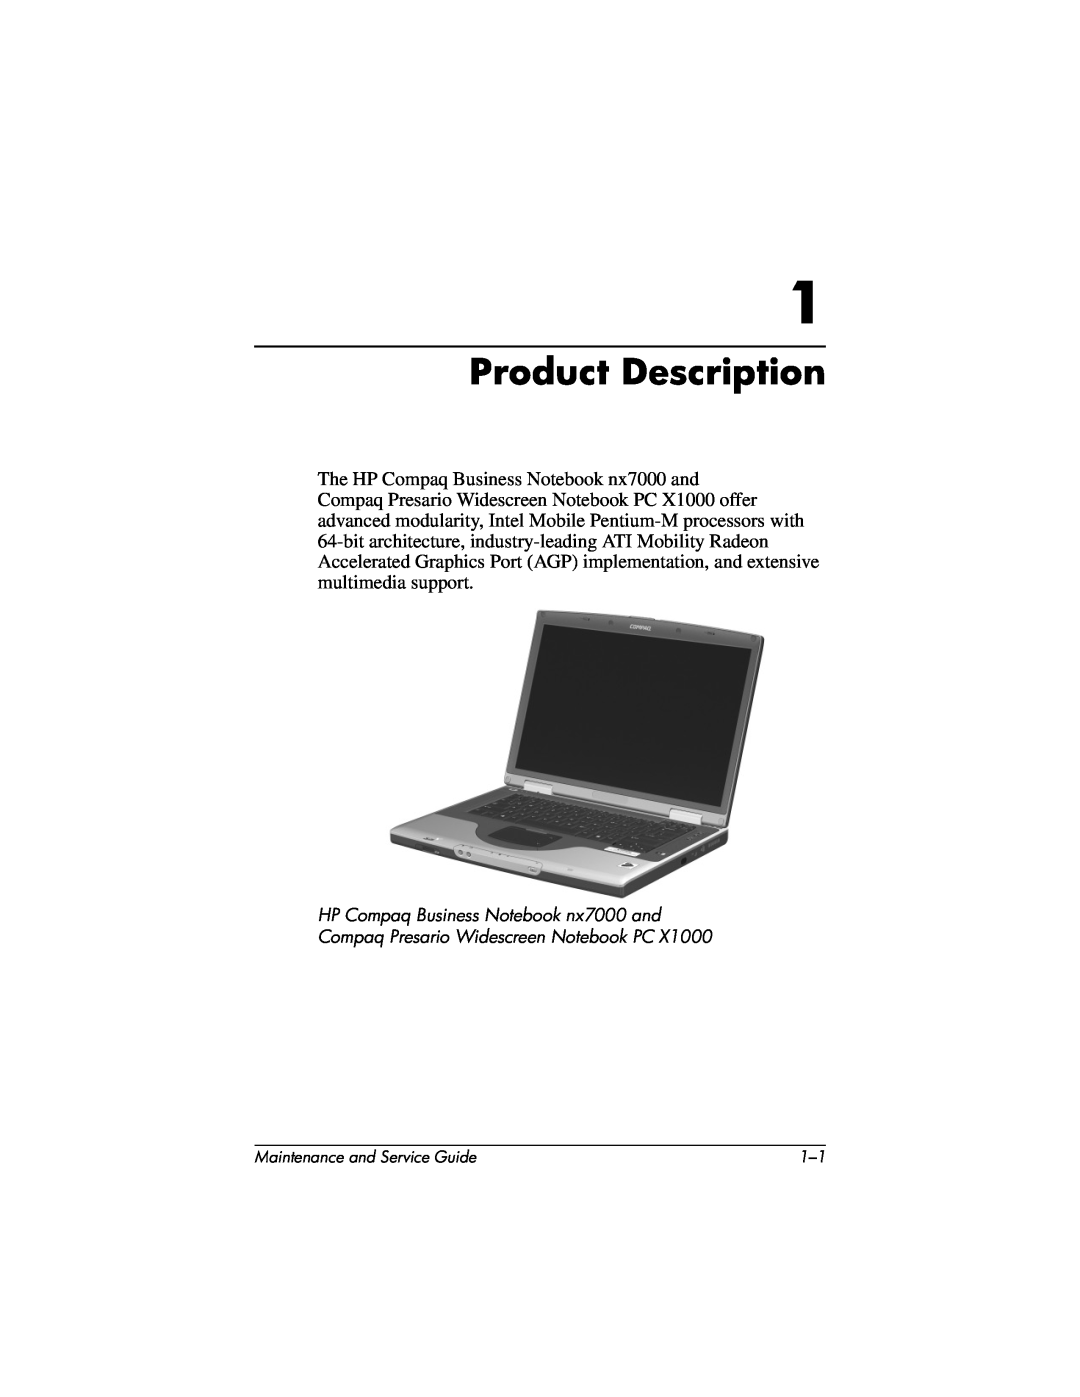 HP nx7000, X1000 manual Product Description 